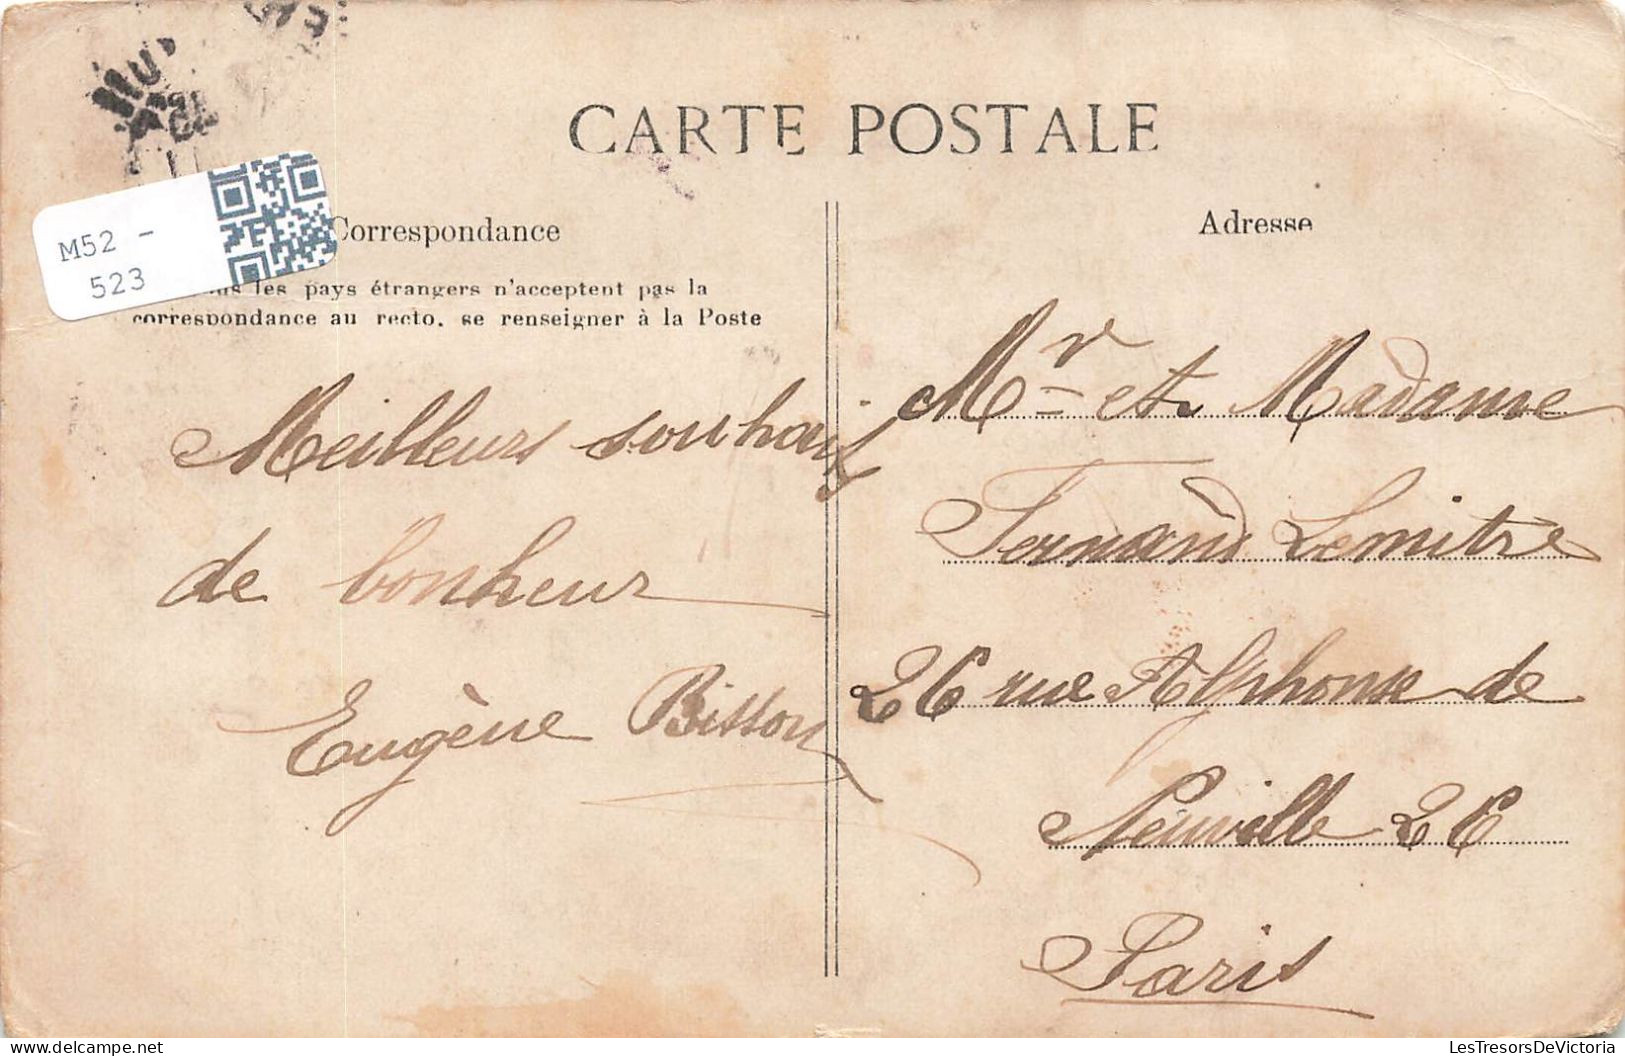 FRANCE - Paris - XVIIIe Arrondissement - Monuments - Fantaisie  - Carte Postale Ancienne - Arrondissement: 07